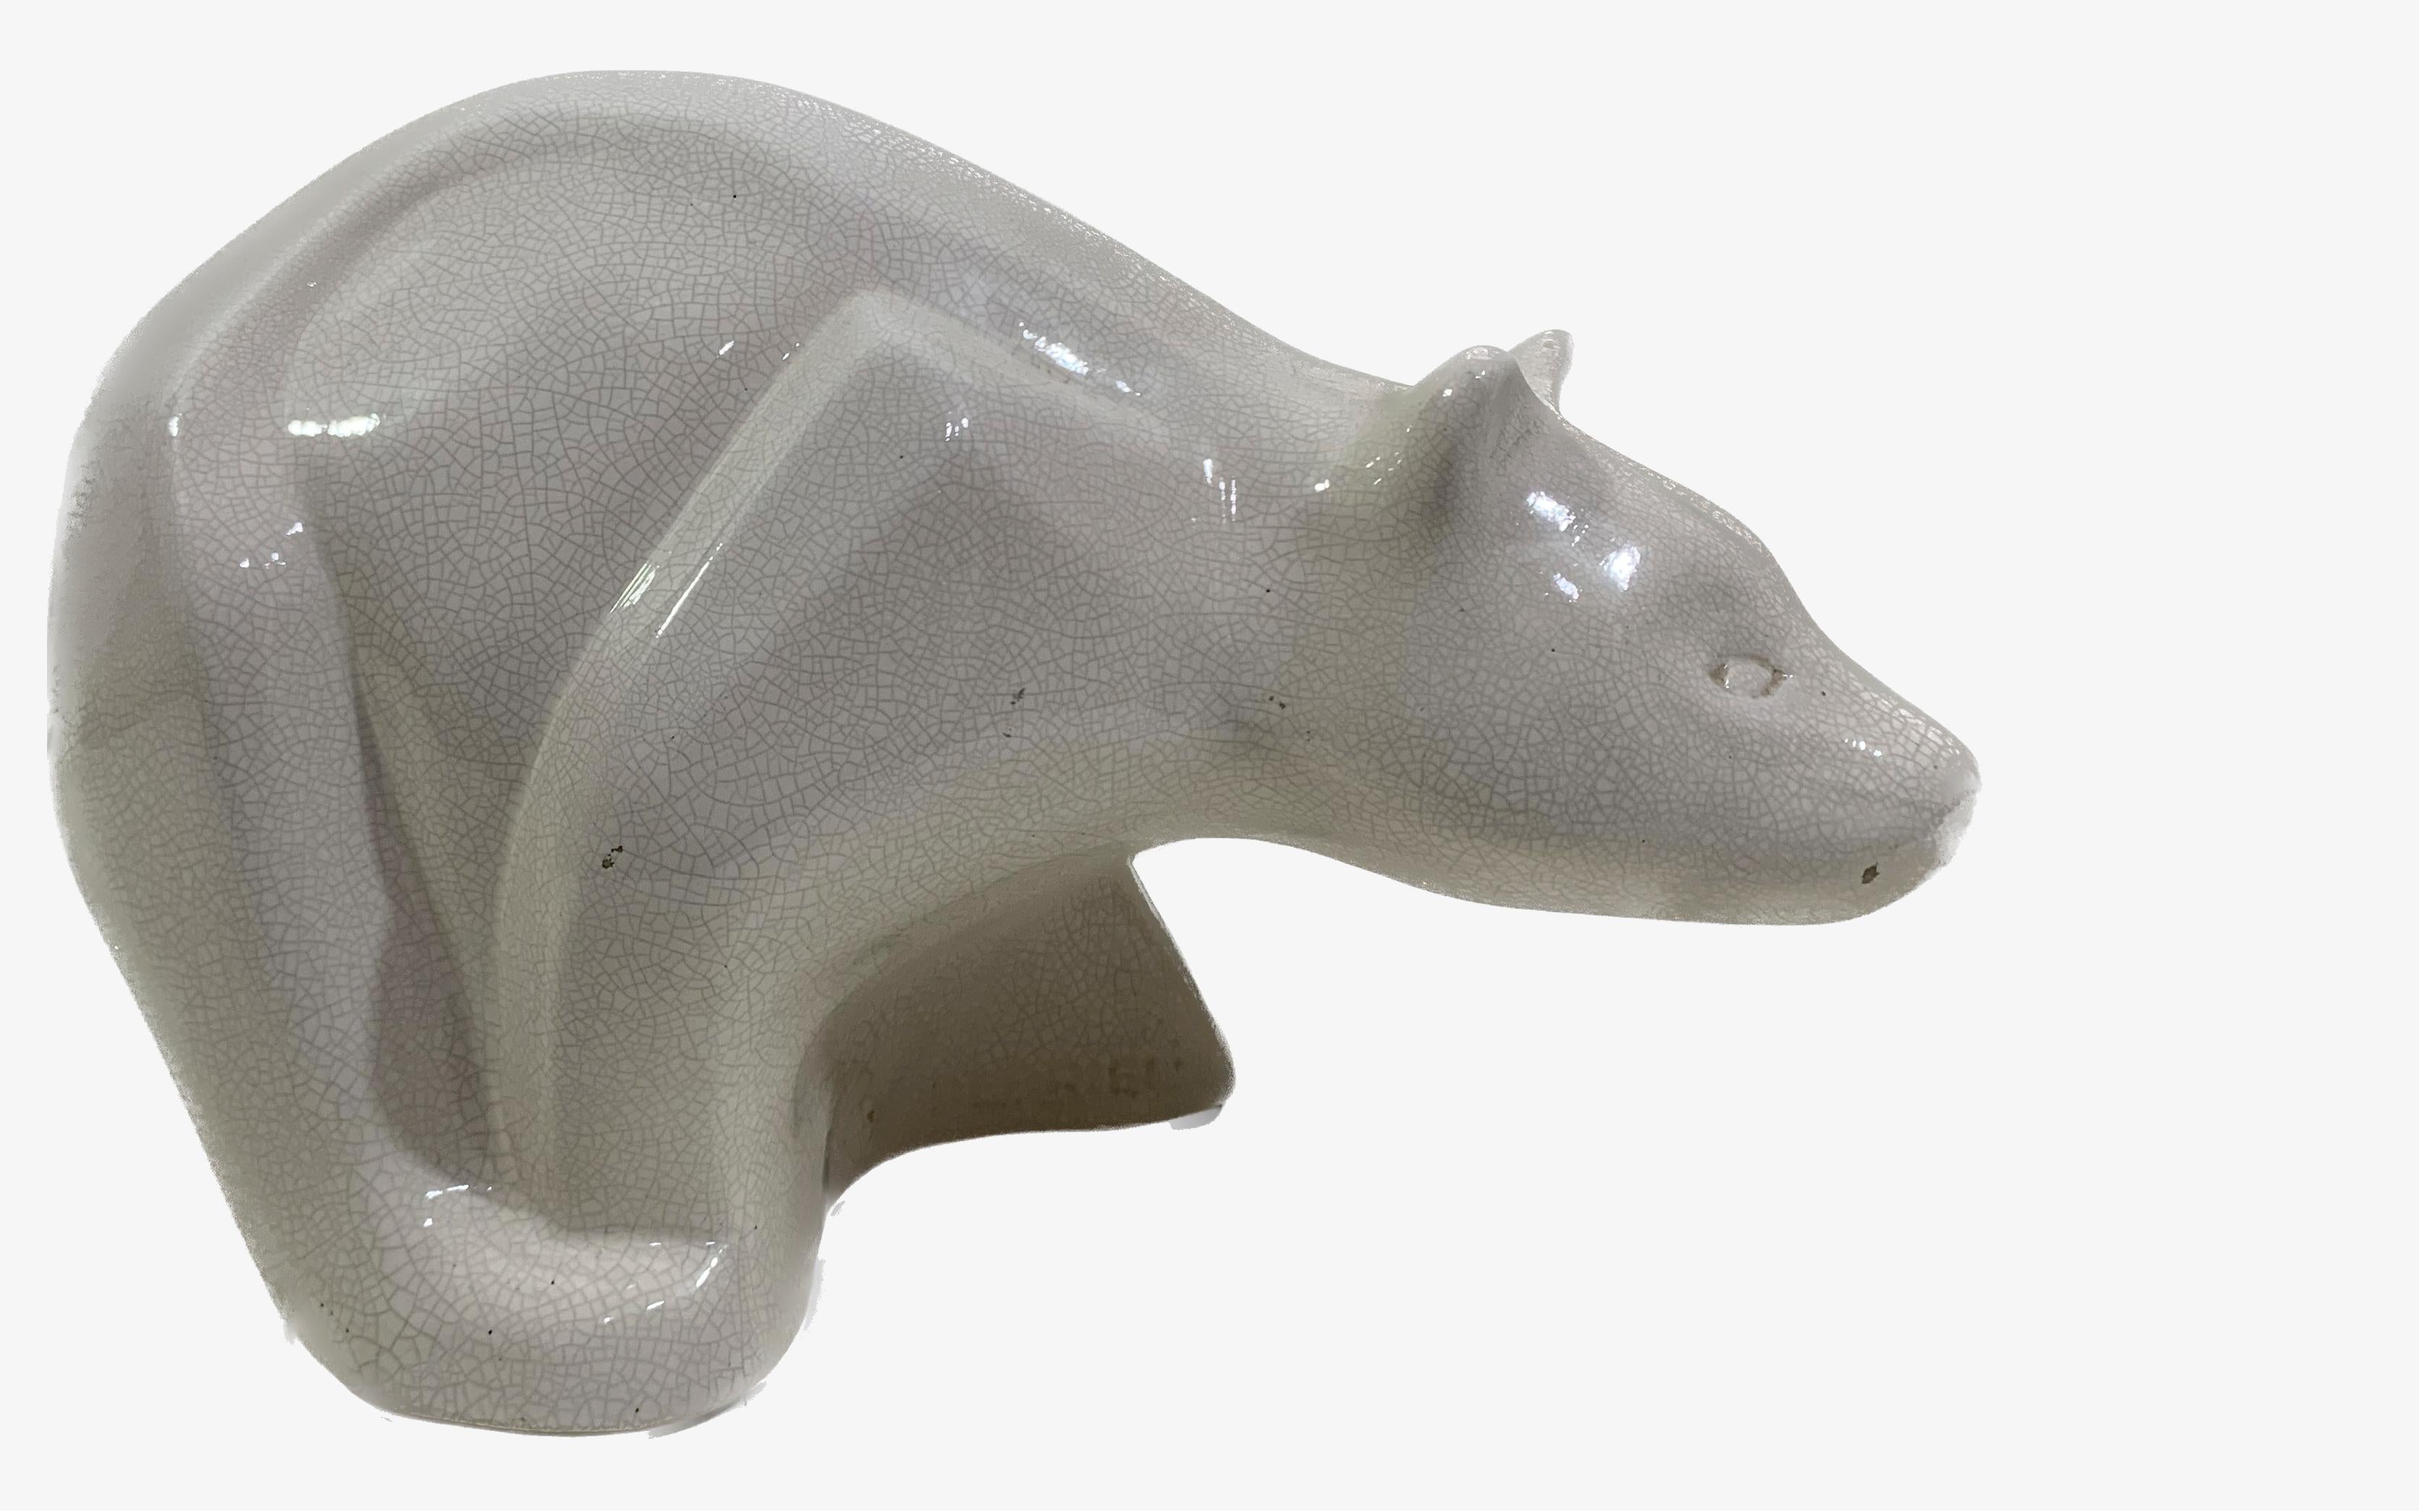 Sculpture d'ours en céramique émaillée blanche et craquelée, représentant un ours signé en partie basse Debrieu.
Une belle sculpture qui ne manquera pas de donner un certain cachet en tant qu'ajout décoratif à tout type d'environnement, car leur